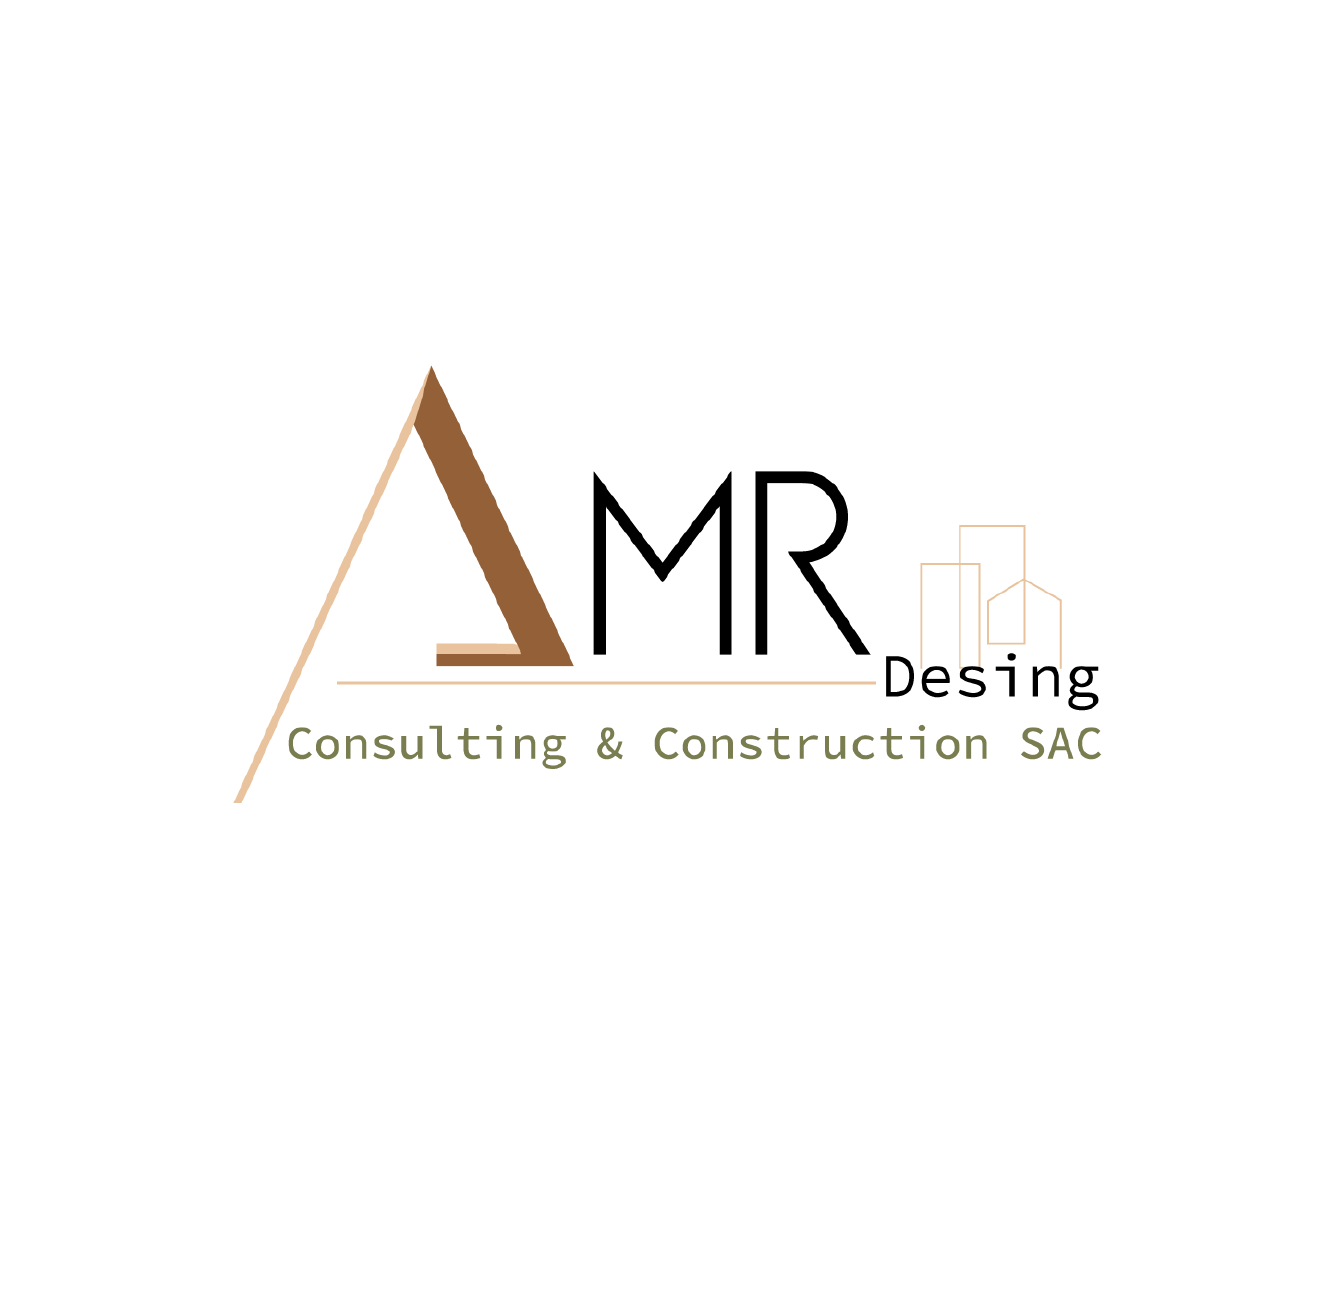 Diseño de Logotipo: AMER Consulting - Logos Peru - Diseño de Logos - Agencia de diseño de Logos - Nombres para Restaurantes Peruanos - logos de constructoras - logo de empresas constructoras - diseño de logotipos en lima